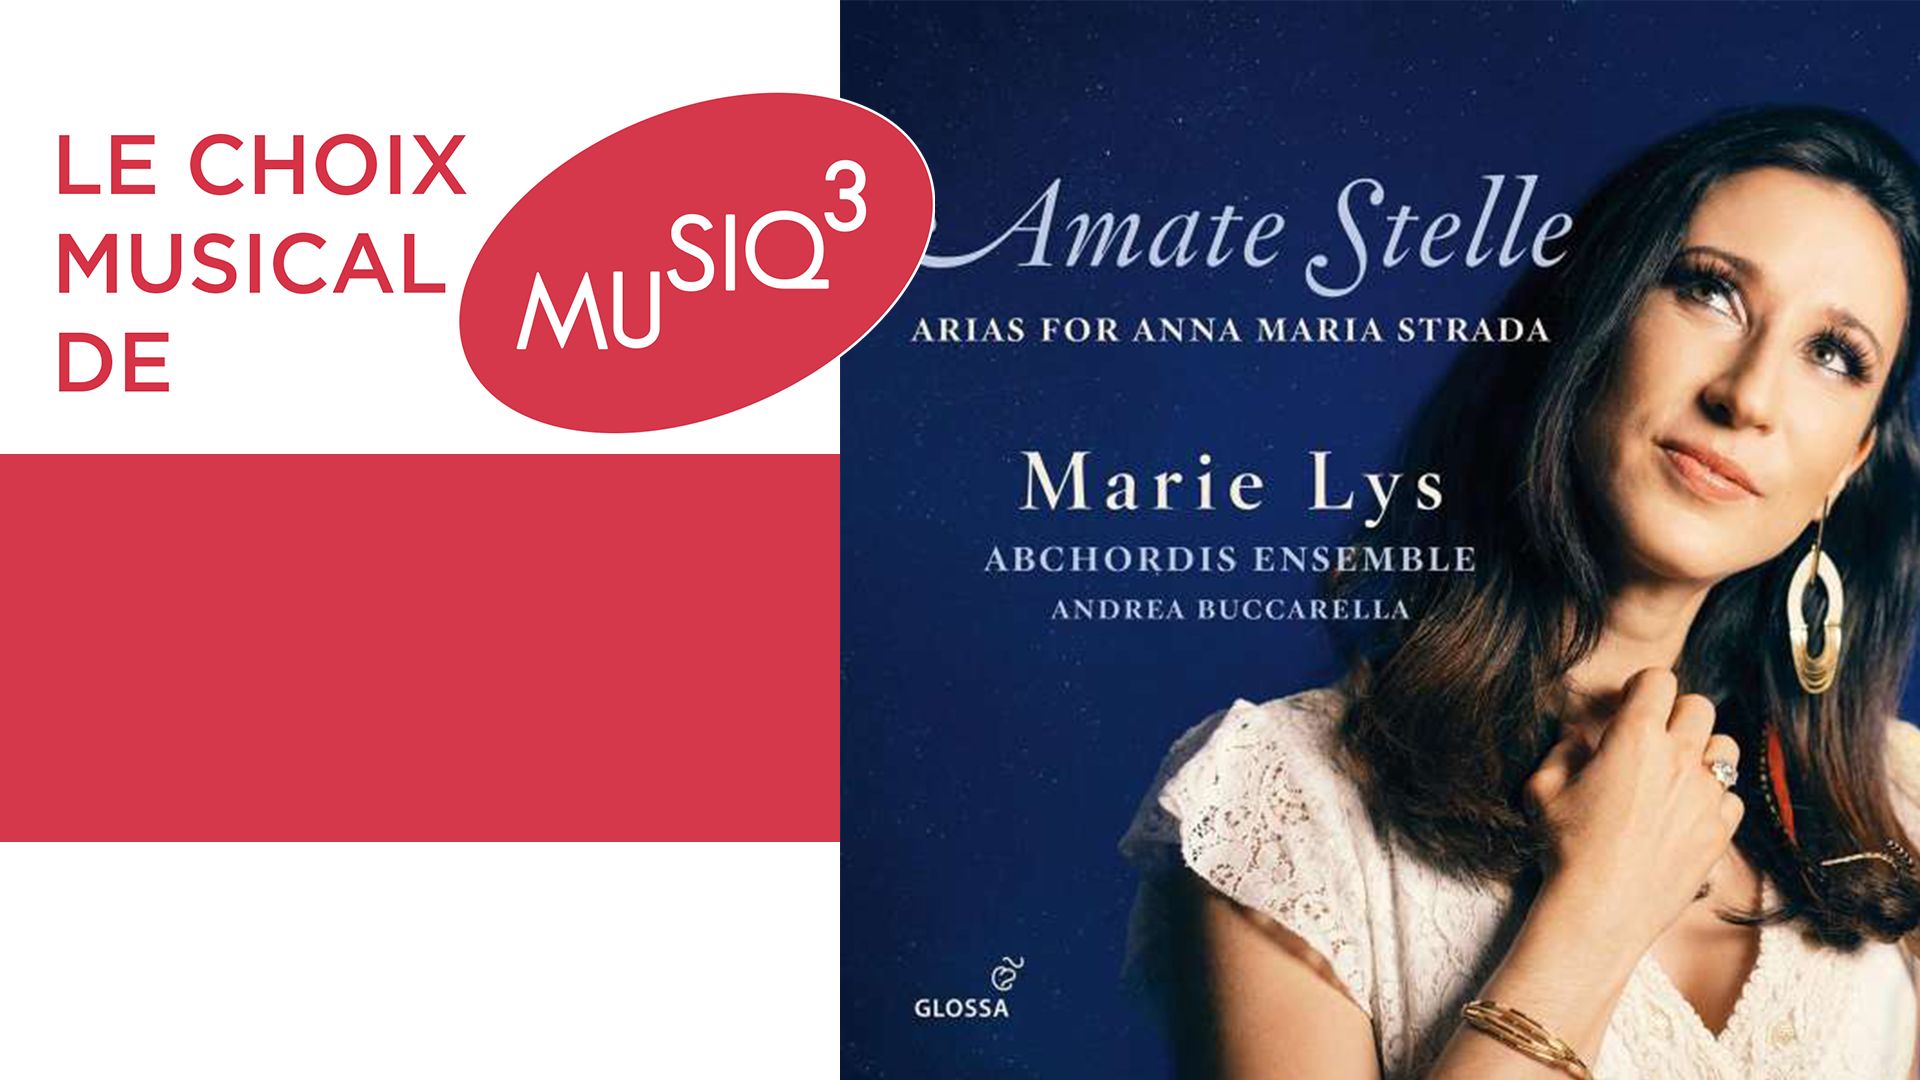 La brillante soprano Marie Lys rend hommage à Anna Maria Strada